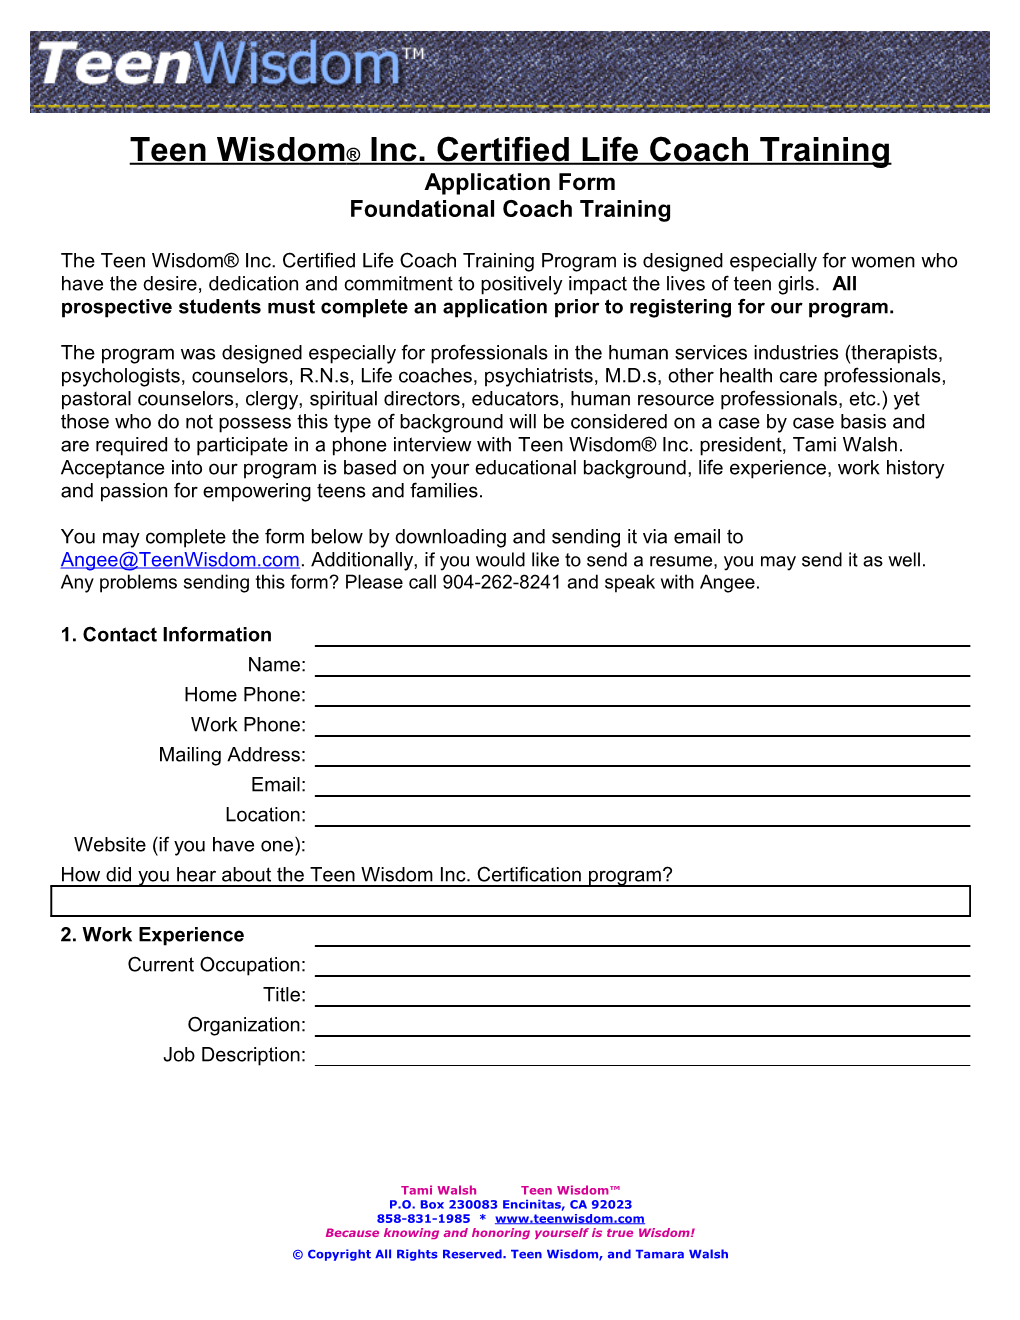 Teen Wisdom Inc. Certified Life Coach Training